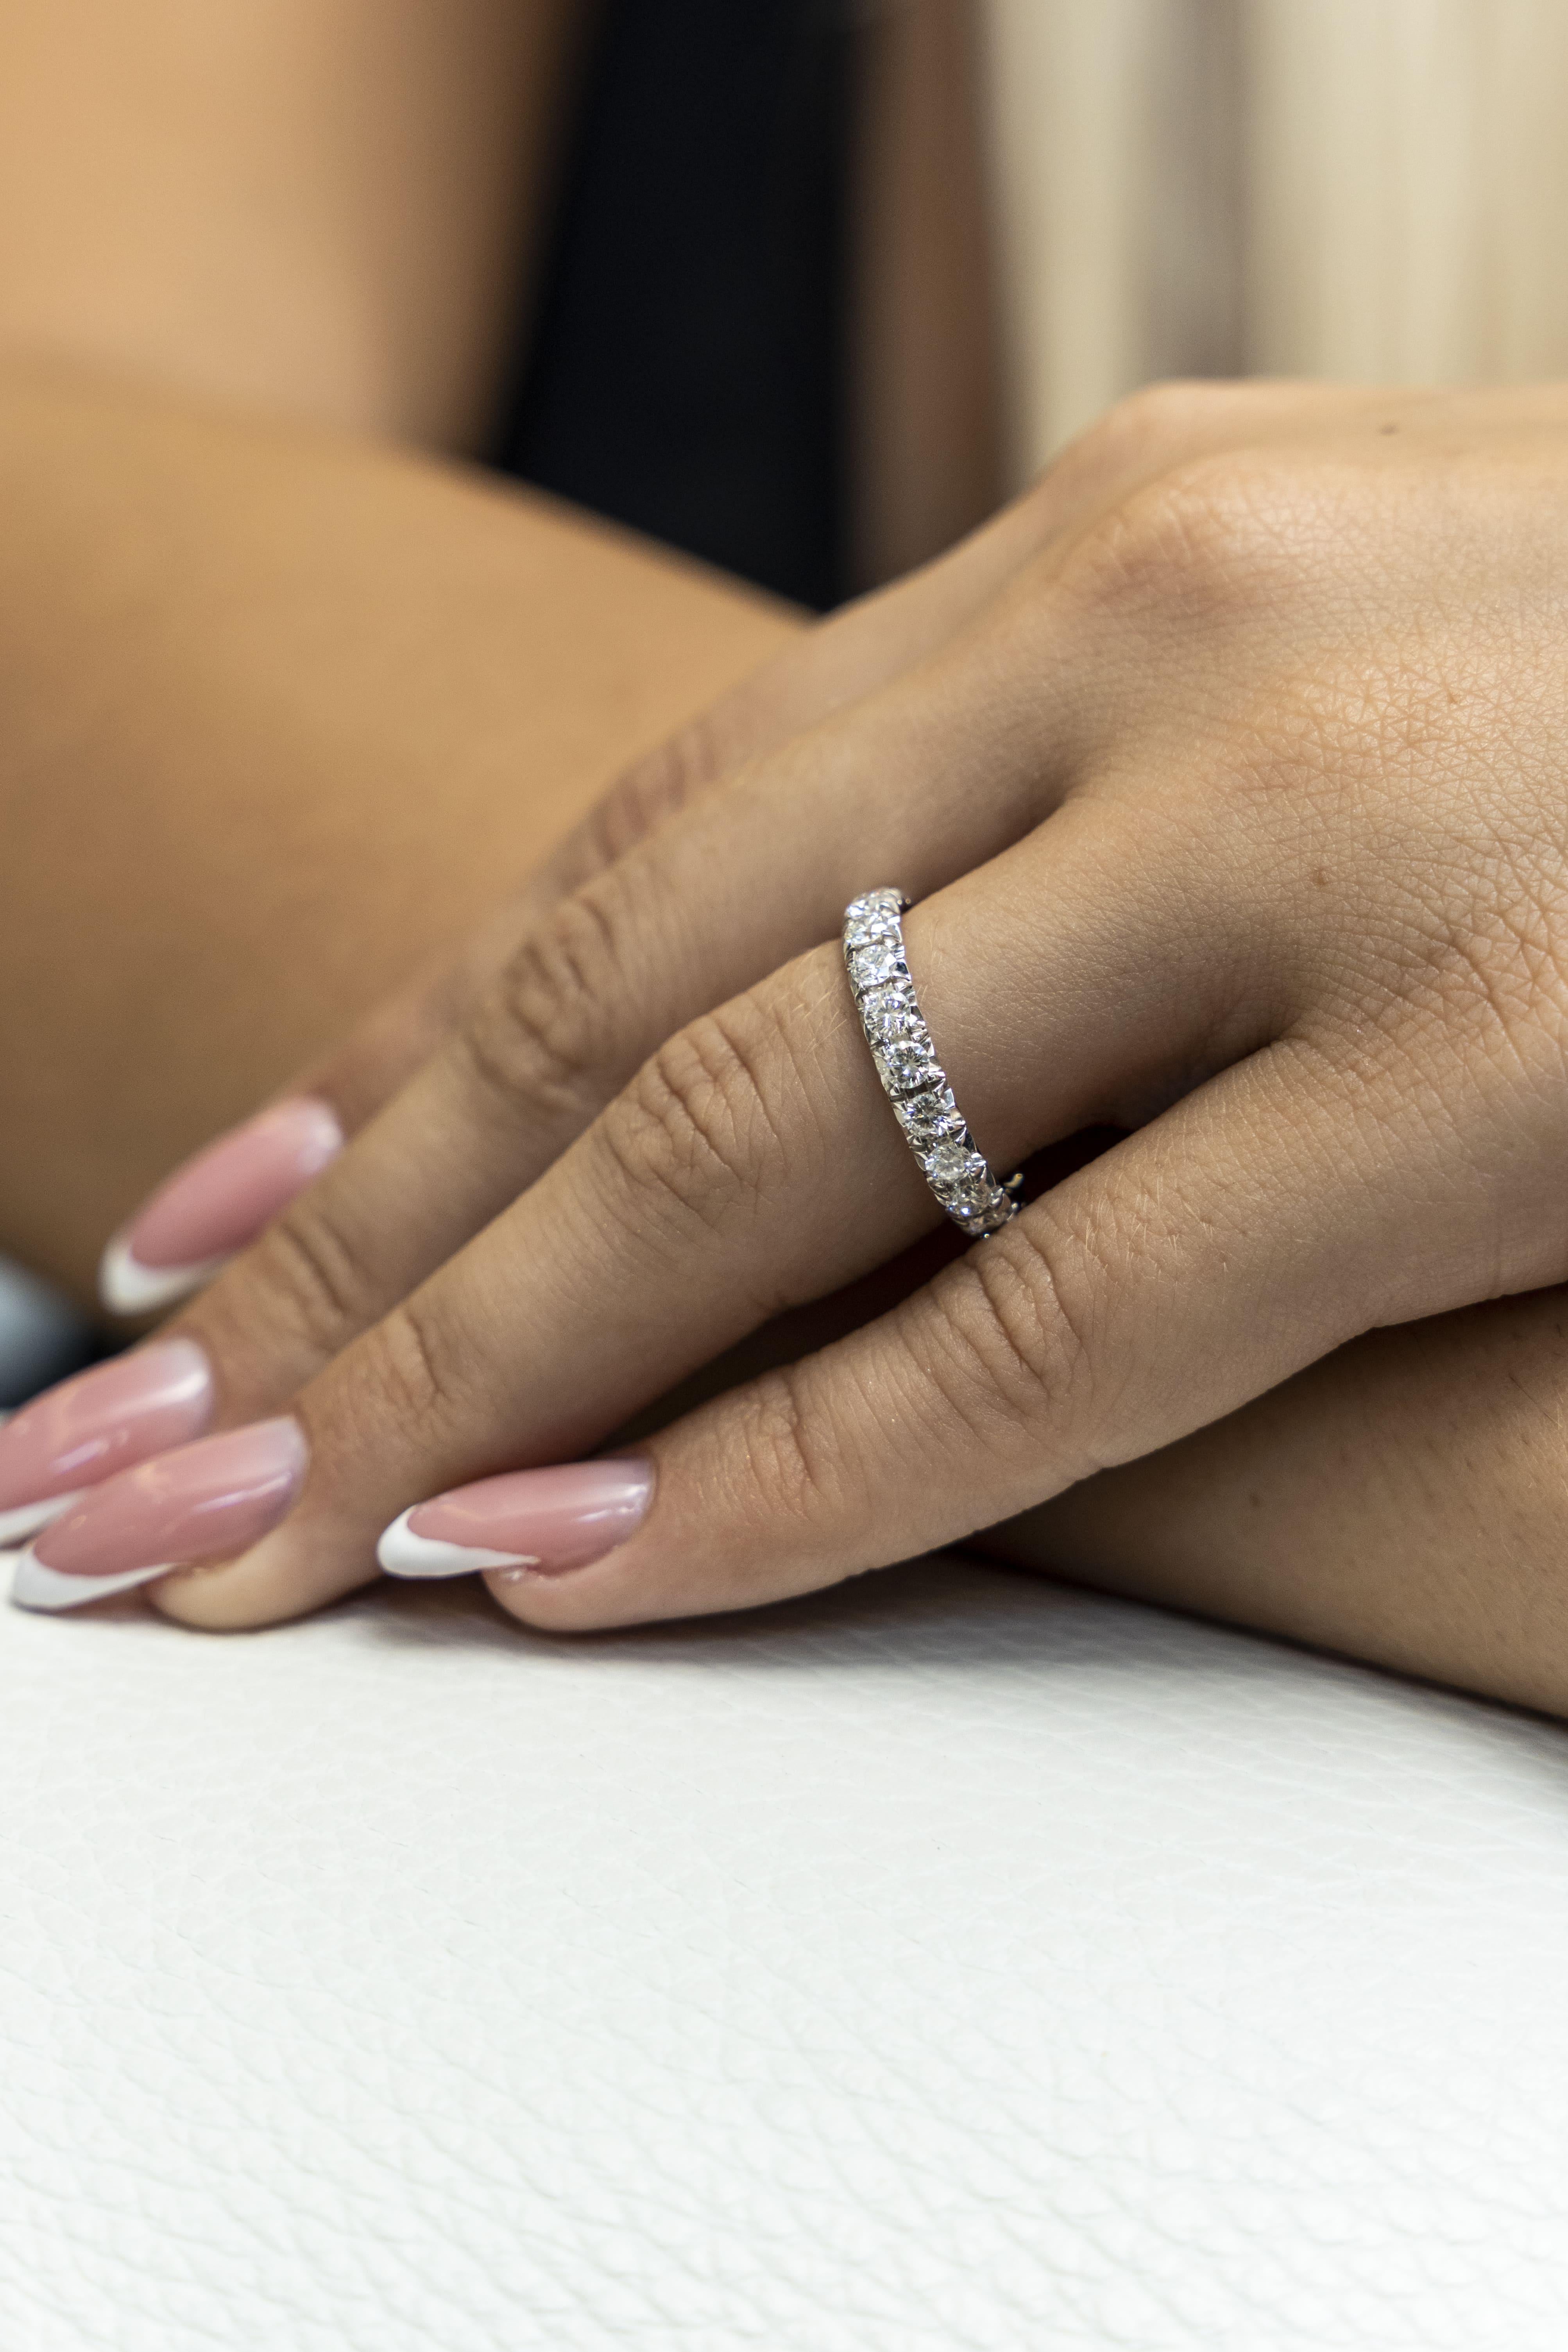 l'anneau en or blanc 18K provient de Wedding Collection. Ce bijou de grande classe est composé de diamants blancs naturels ronds d'une valeur totale de 1,74 carat. Le poids total du métal est de 4,30 gr. Parfait pour toute occasion ! 

